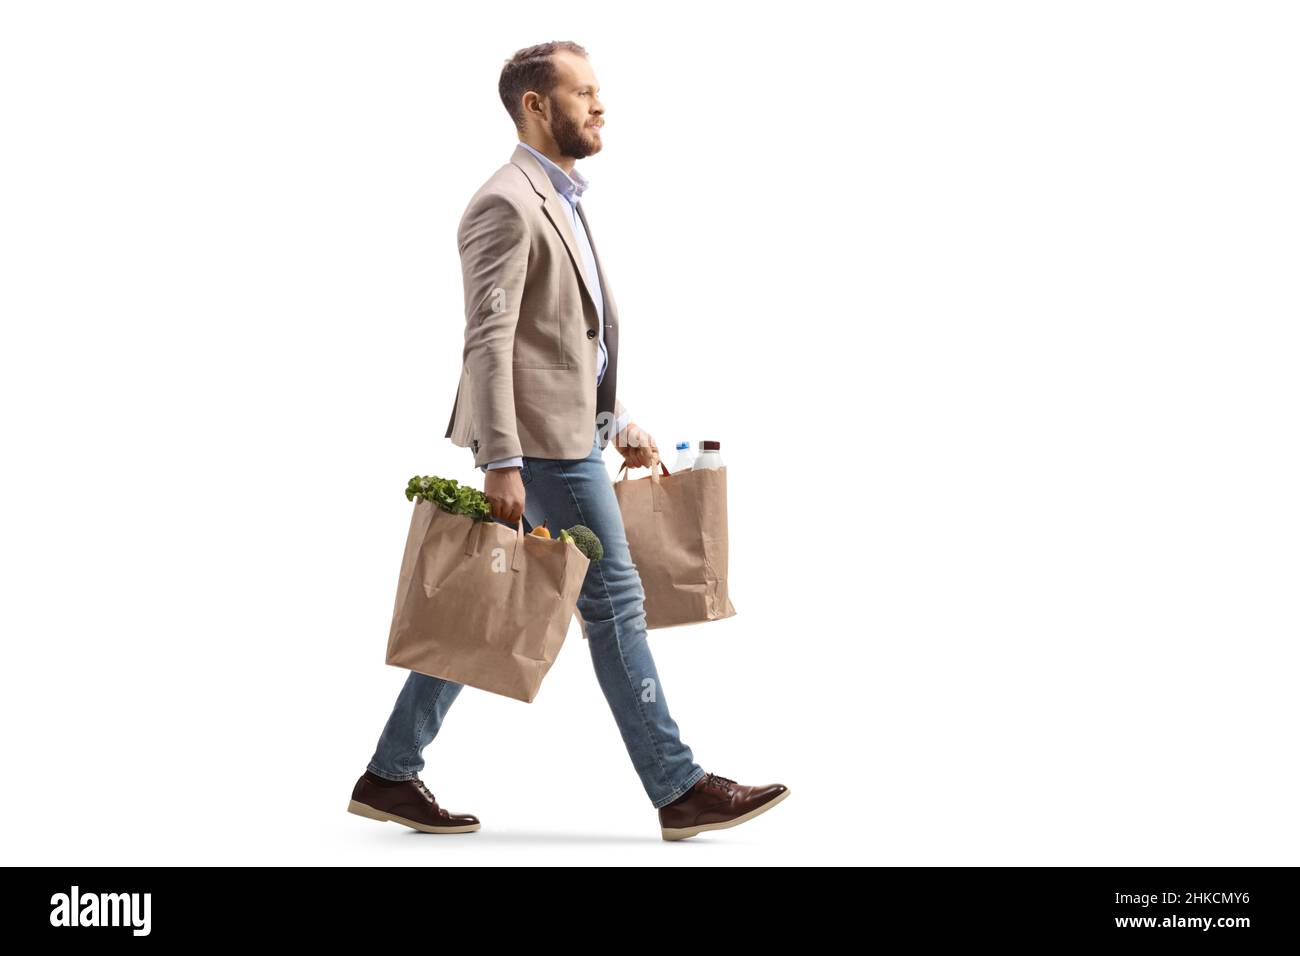 Mann, der auf weißem Hintergrund zwei Einkaufstüten trägt und läuft Stockfoto